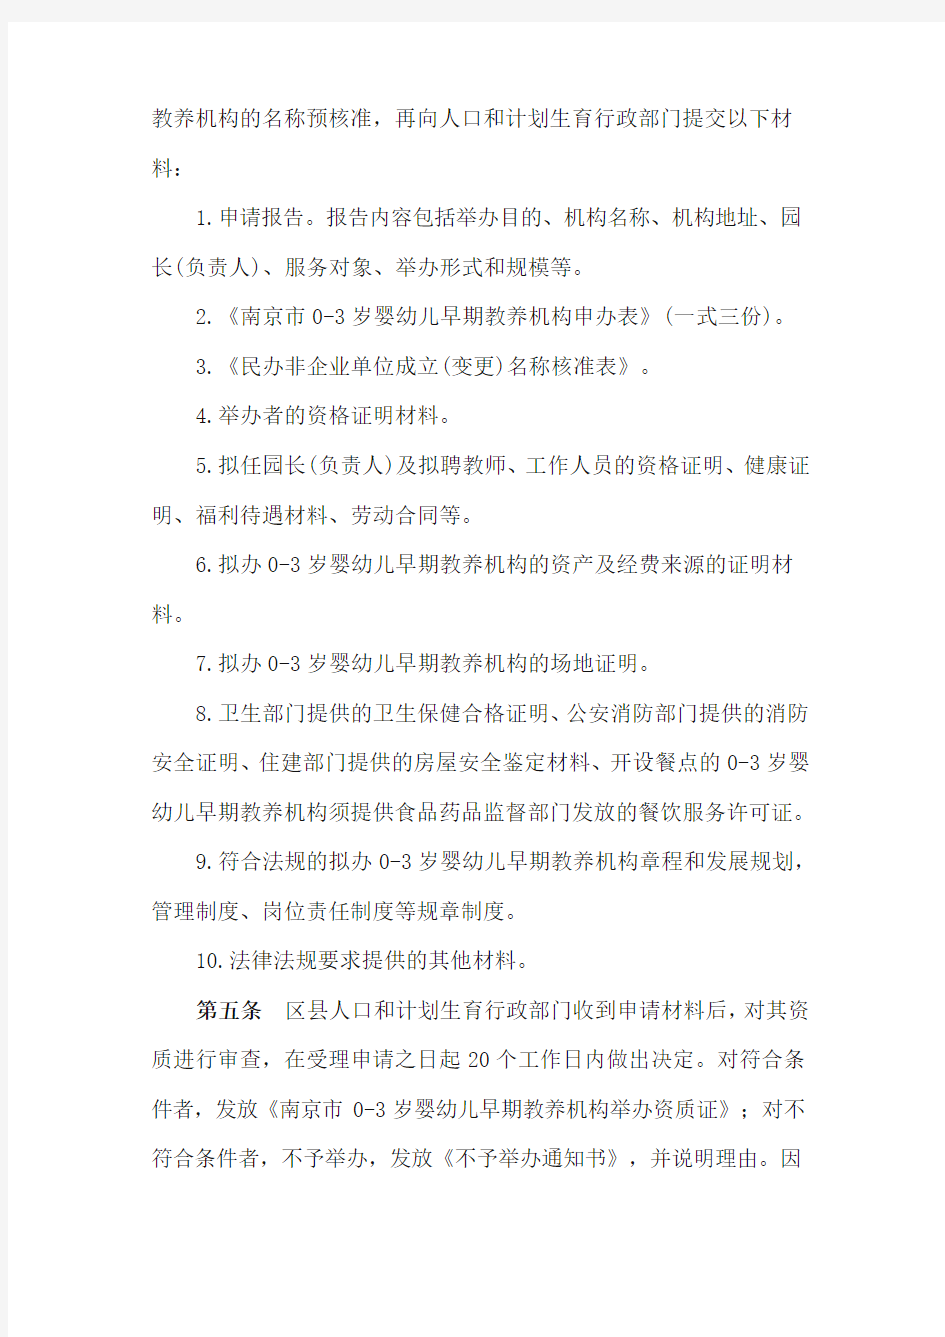 南京市0-3岁婴幼儿早期教养机构设置管理办法(试行)